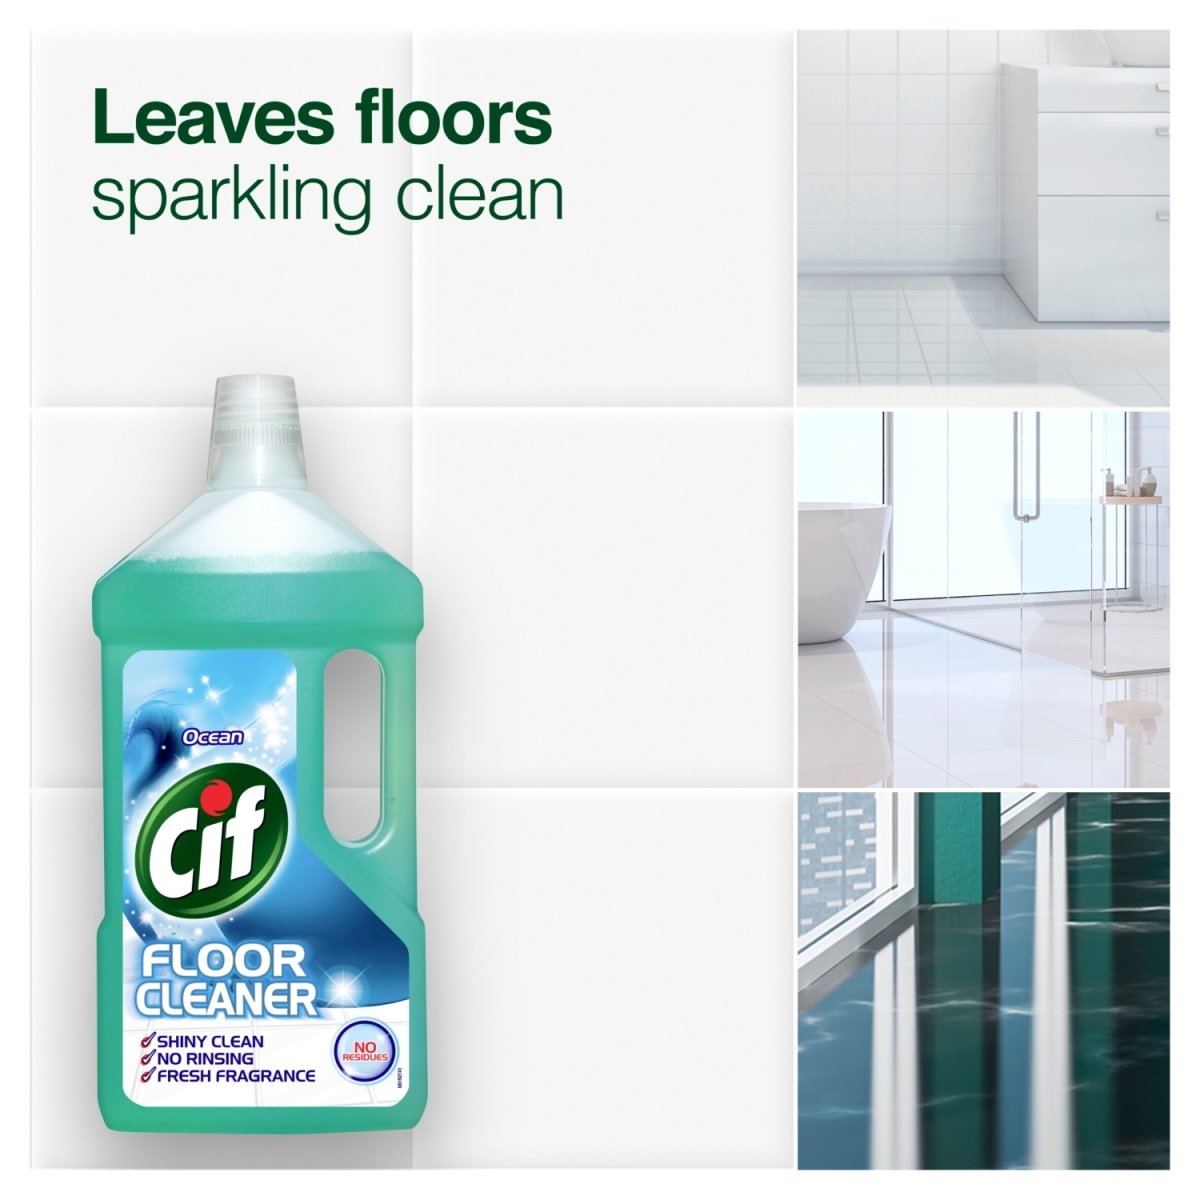 Cif Floor Cleaner 950ml Ocean - Intamarque 8710847994159